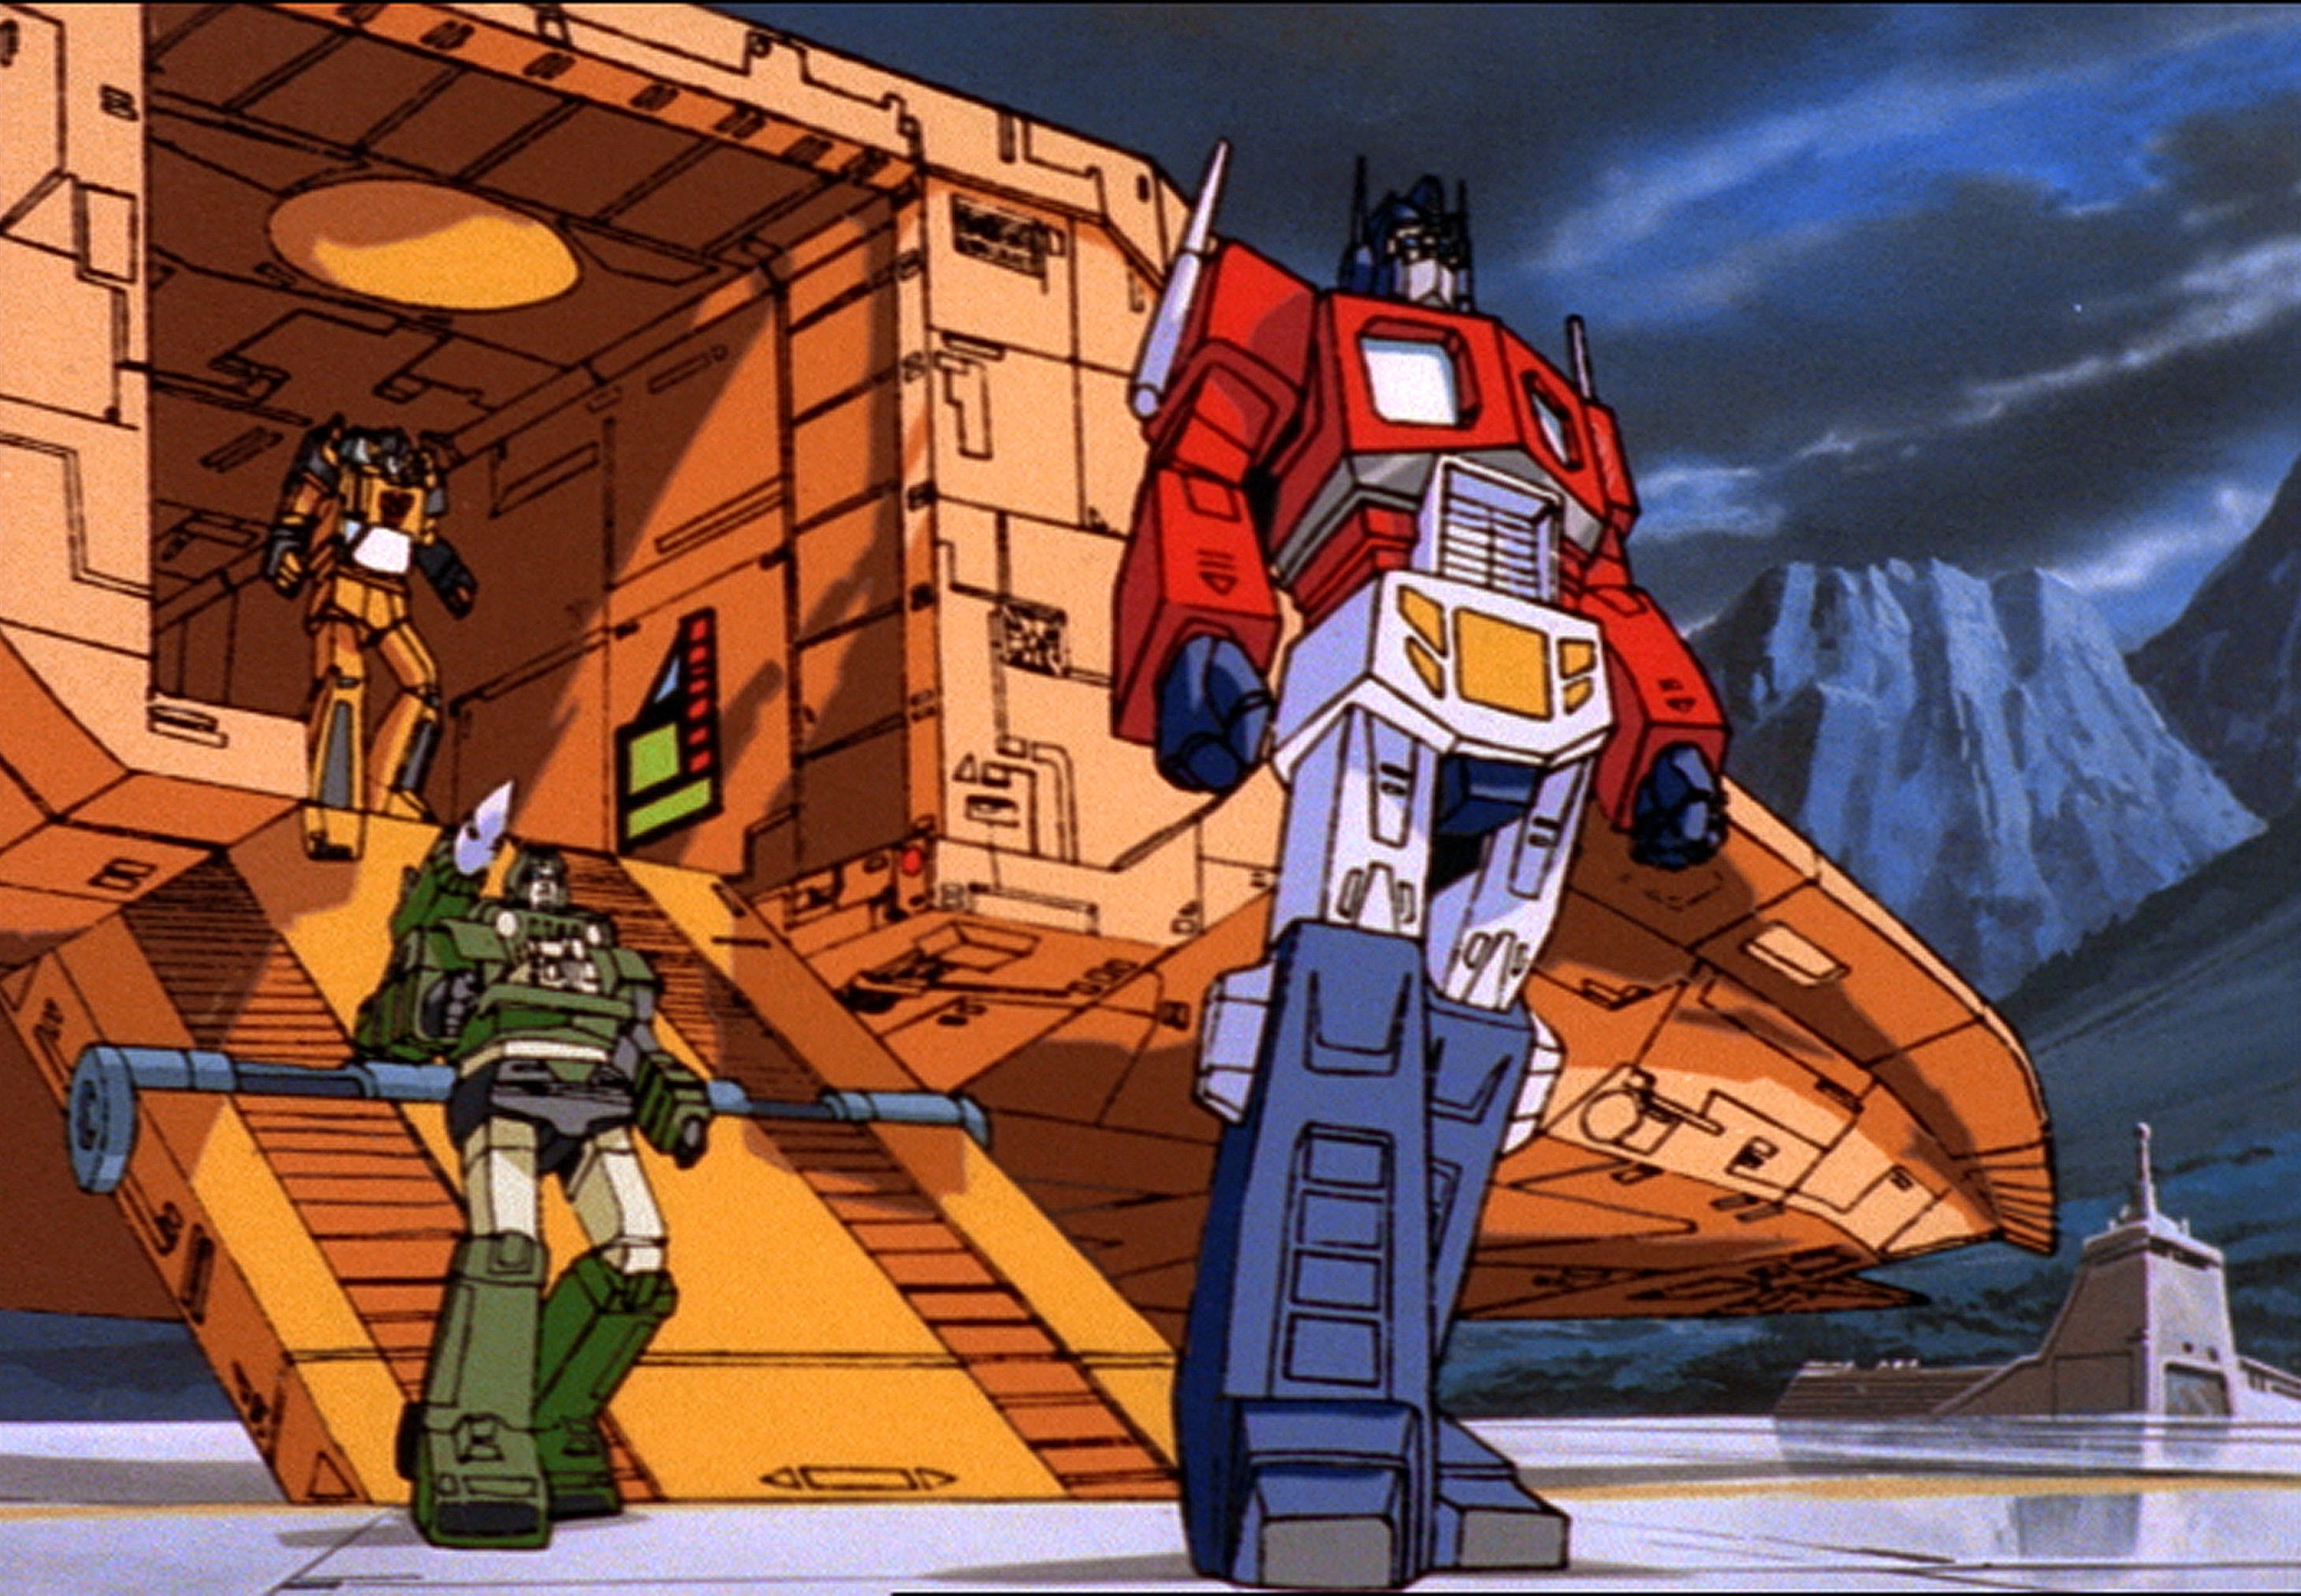 original transformers show